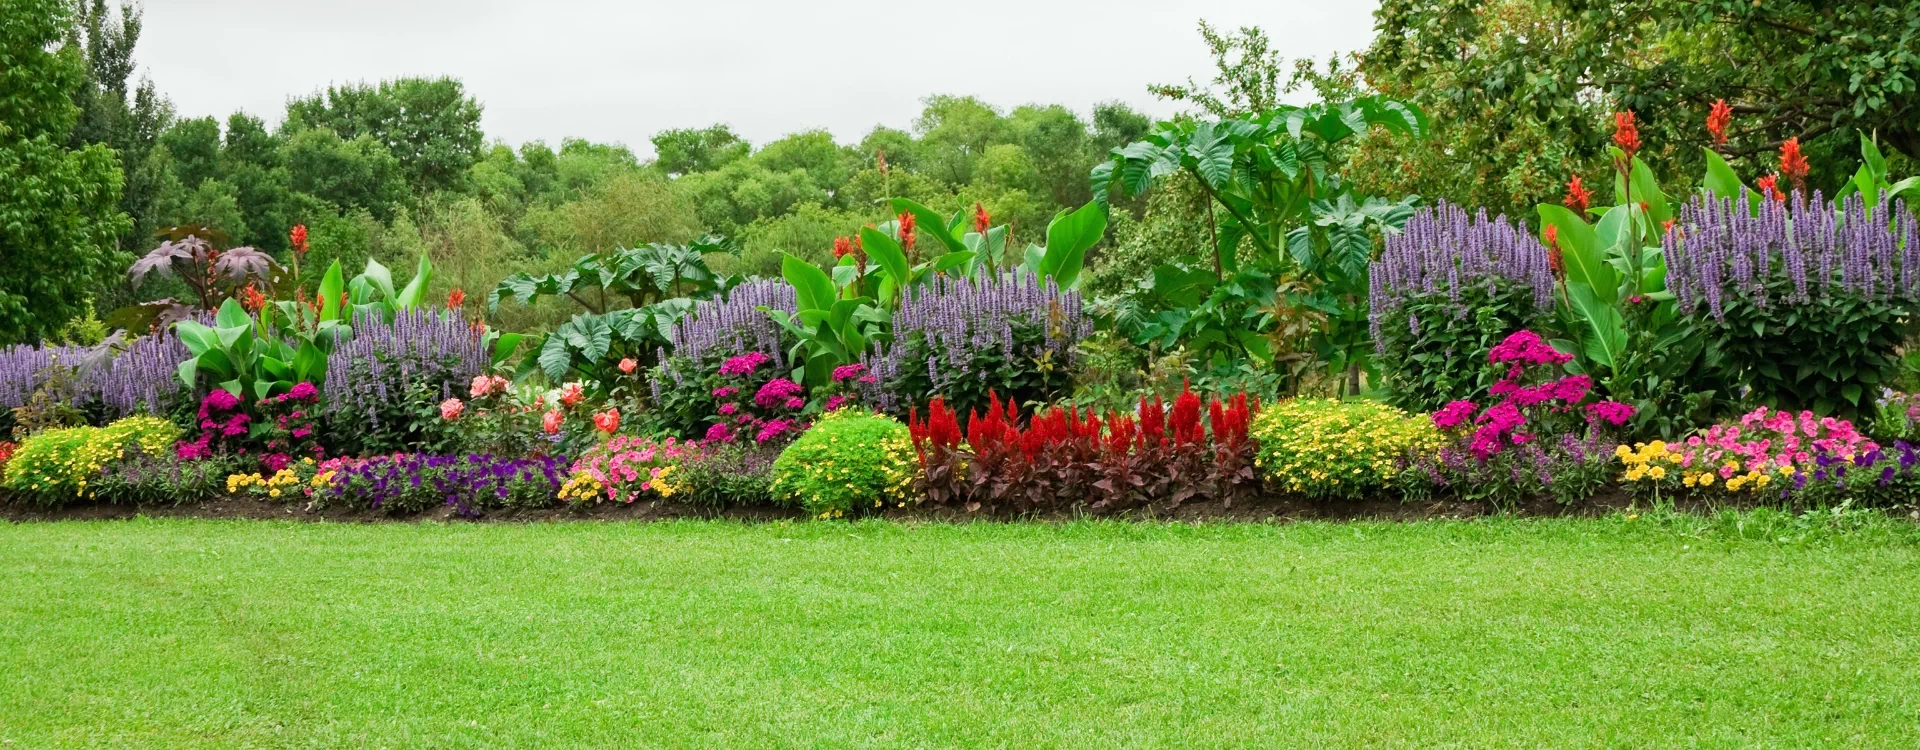 Kolorowe rośliny w ogrodzie